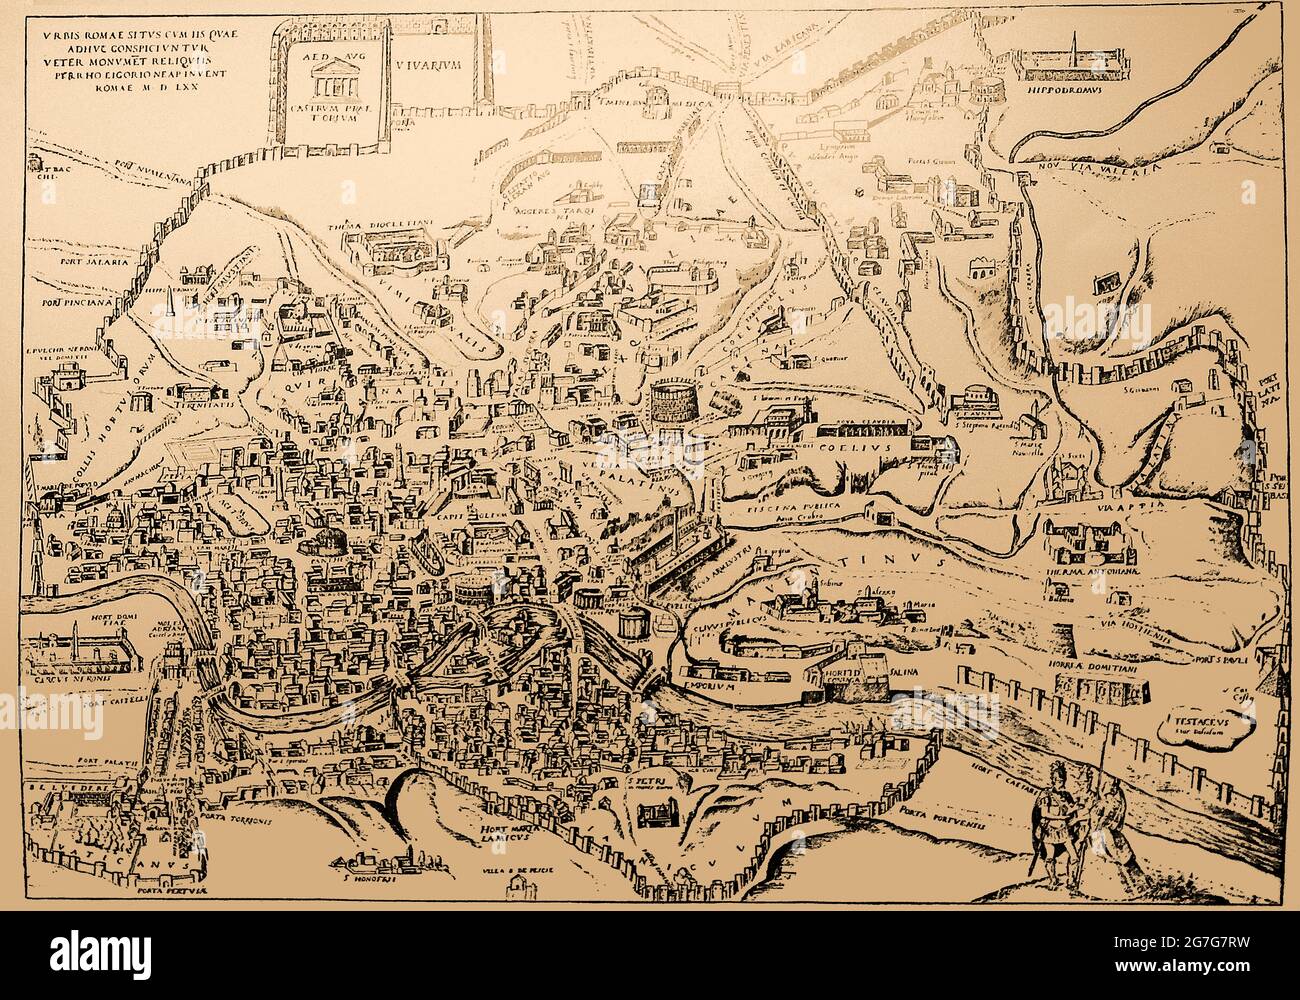 Une carte du XVIe siècle de la ville de Rome, Italie, montrant les principaux monuments , bâtiments et noms en latin, en 1570 Banque D'Images